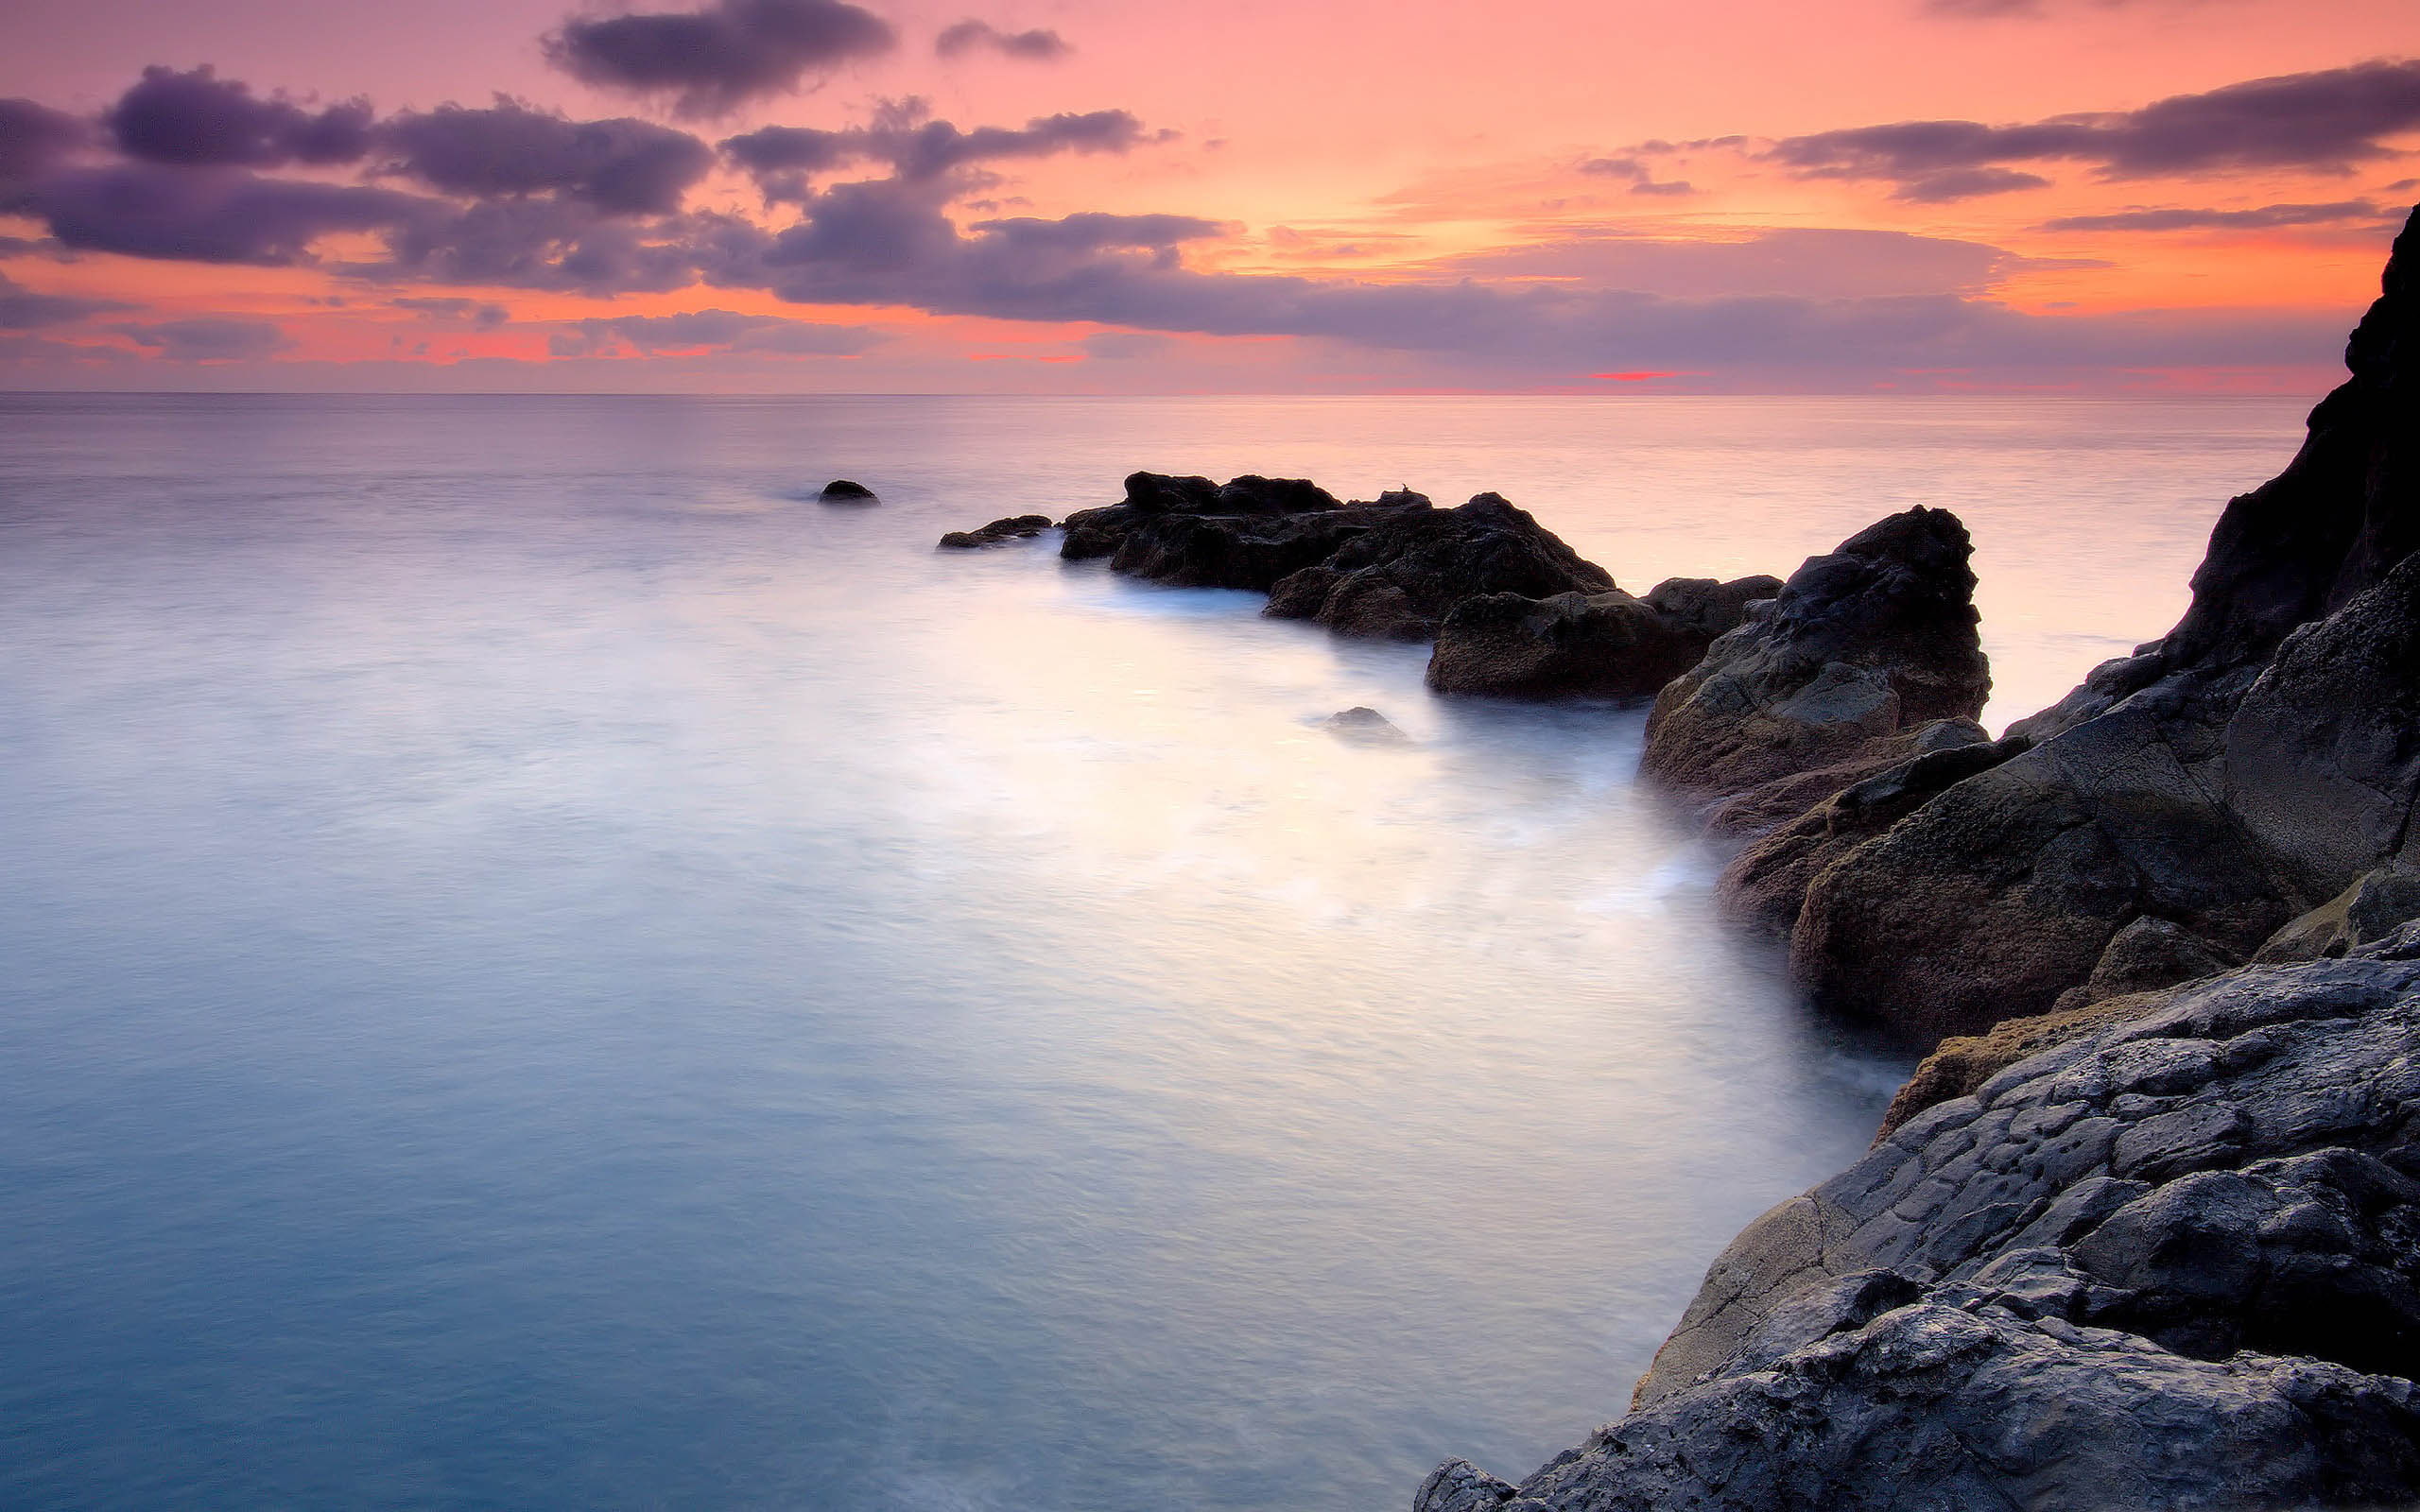 Sea, Sunset, Landscape, Rock, Coast, Scenery, body of water near rocky shore